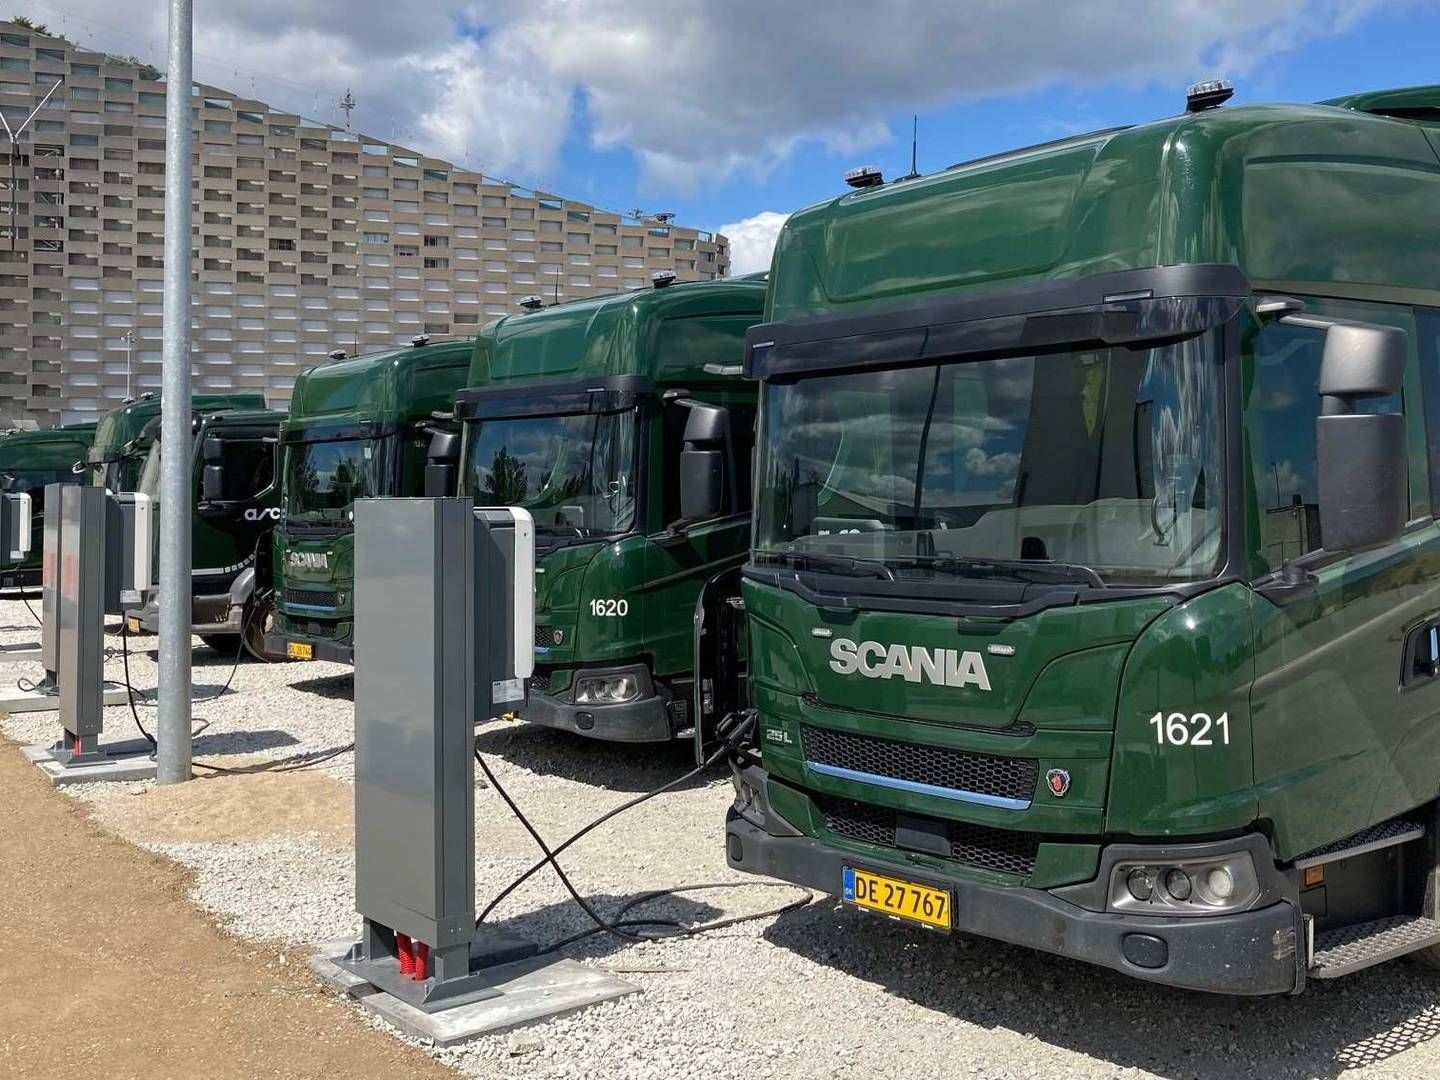 Foruden strøm fra ladestandere som på billedet får Københavns elskraldebiler strøm fra dieselgeneratorer. | Foto: PR / ARC